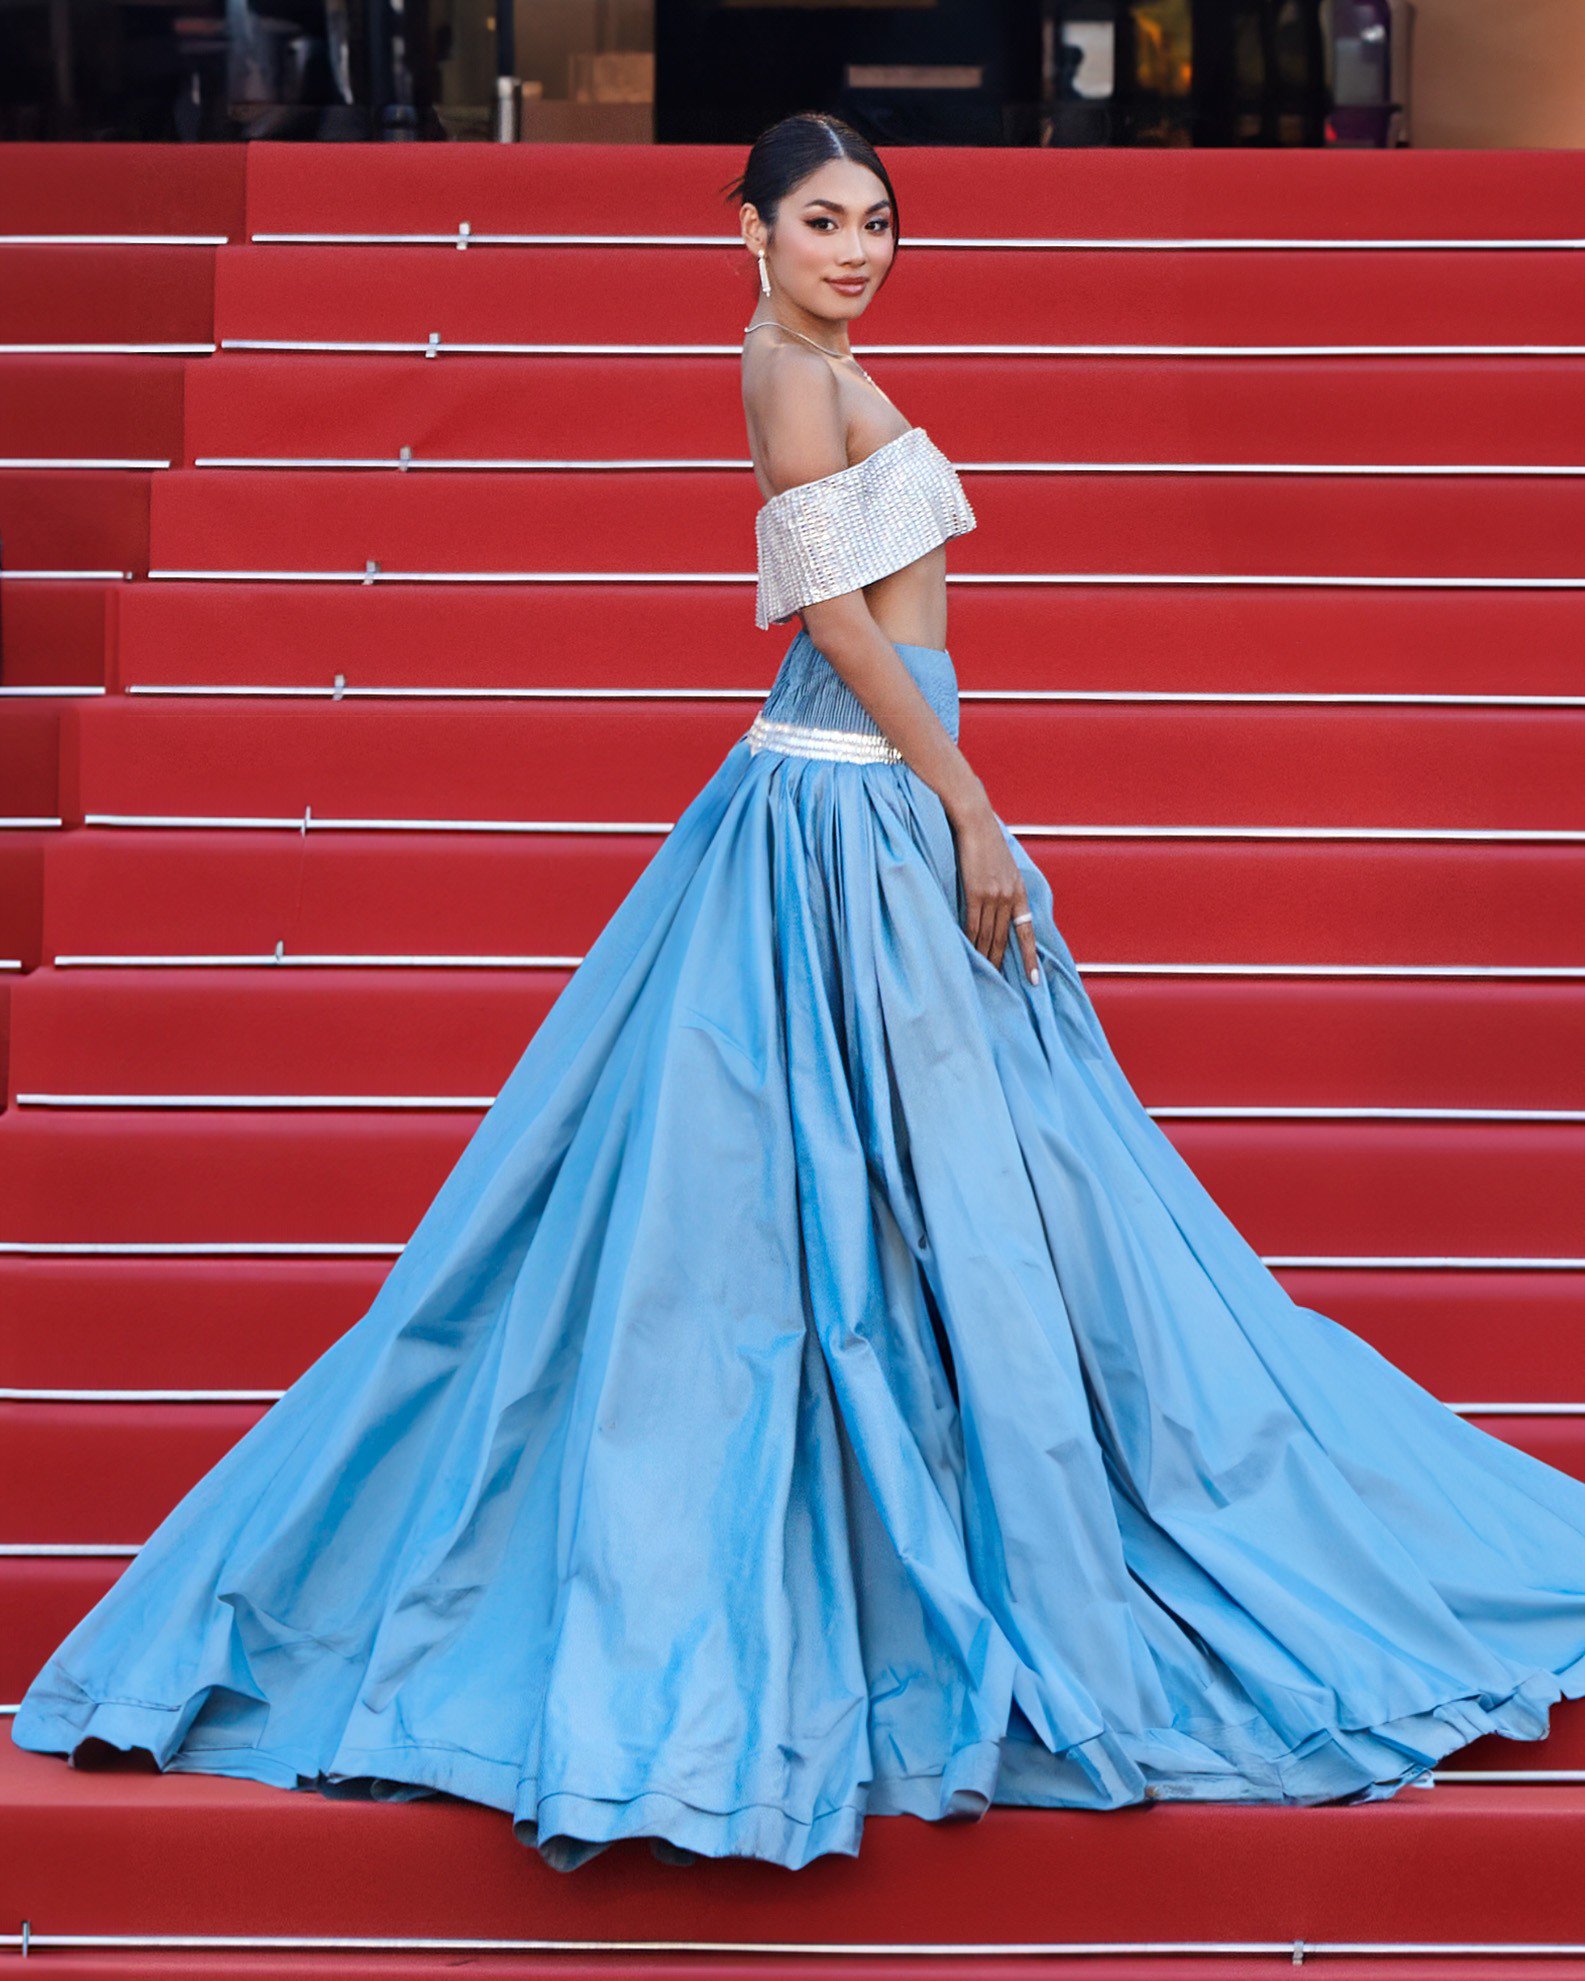 Á hậu Thảo Nhi Lê: 'Tôi được mời đến Cannes, làm gì có chuyện bị đuổi khỏi thảm đỏ' - 3